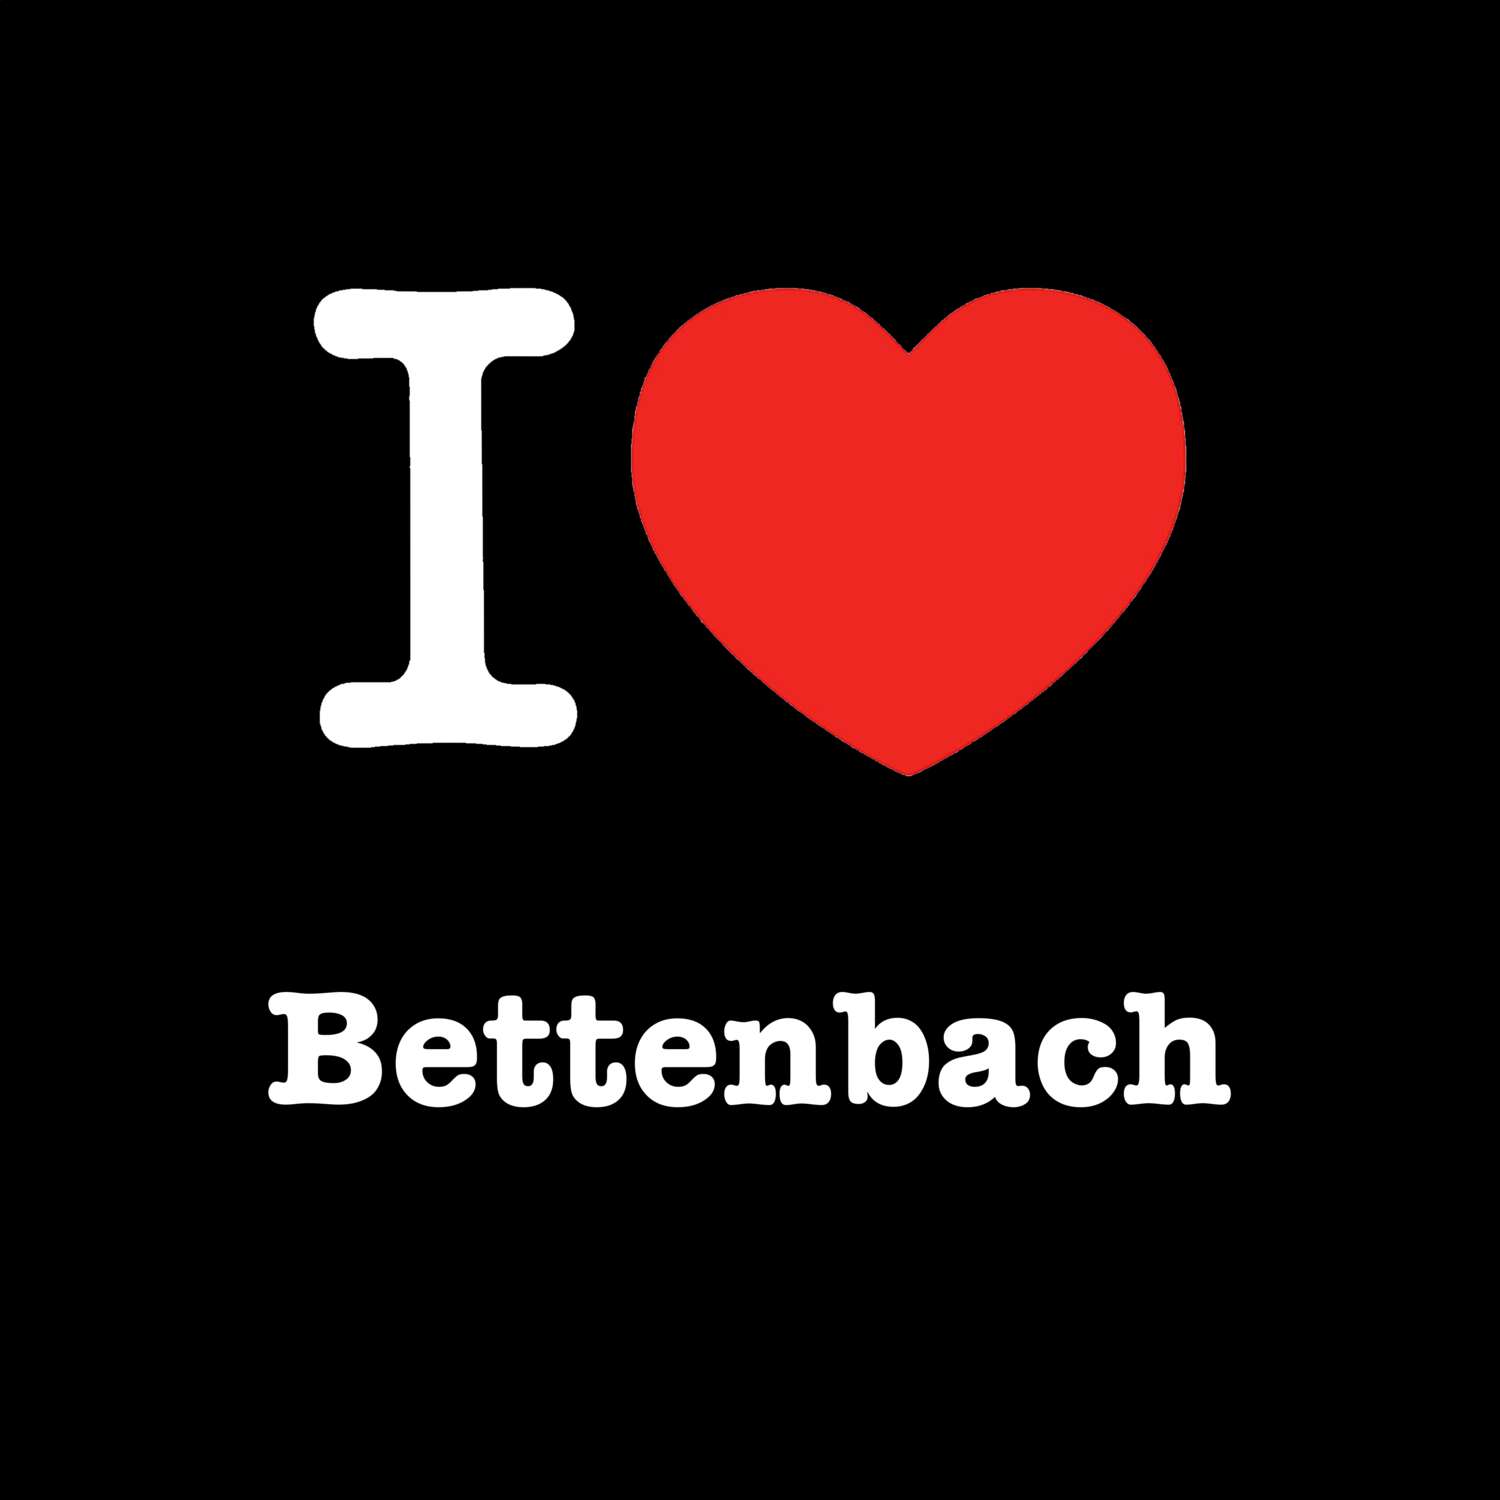 Bettenbach T-Shirt »I love«